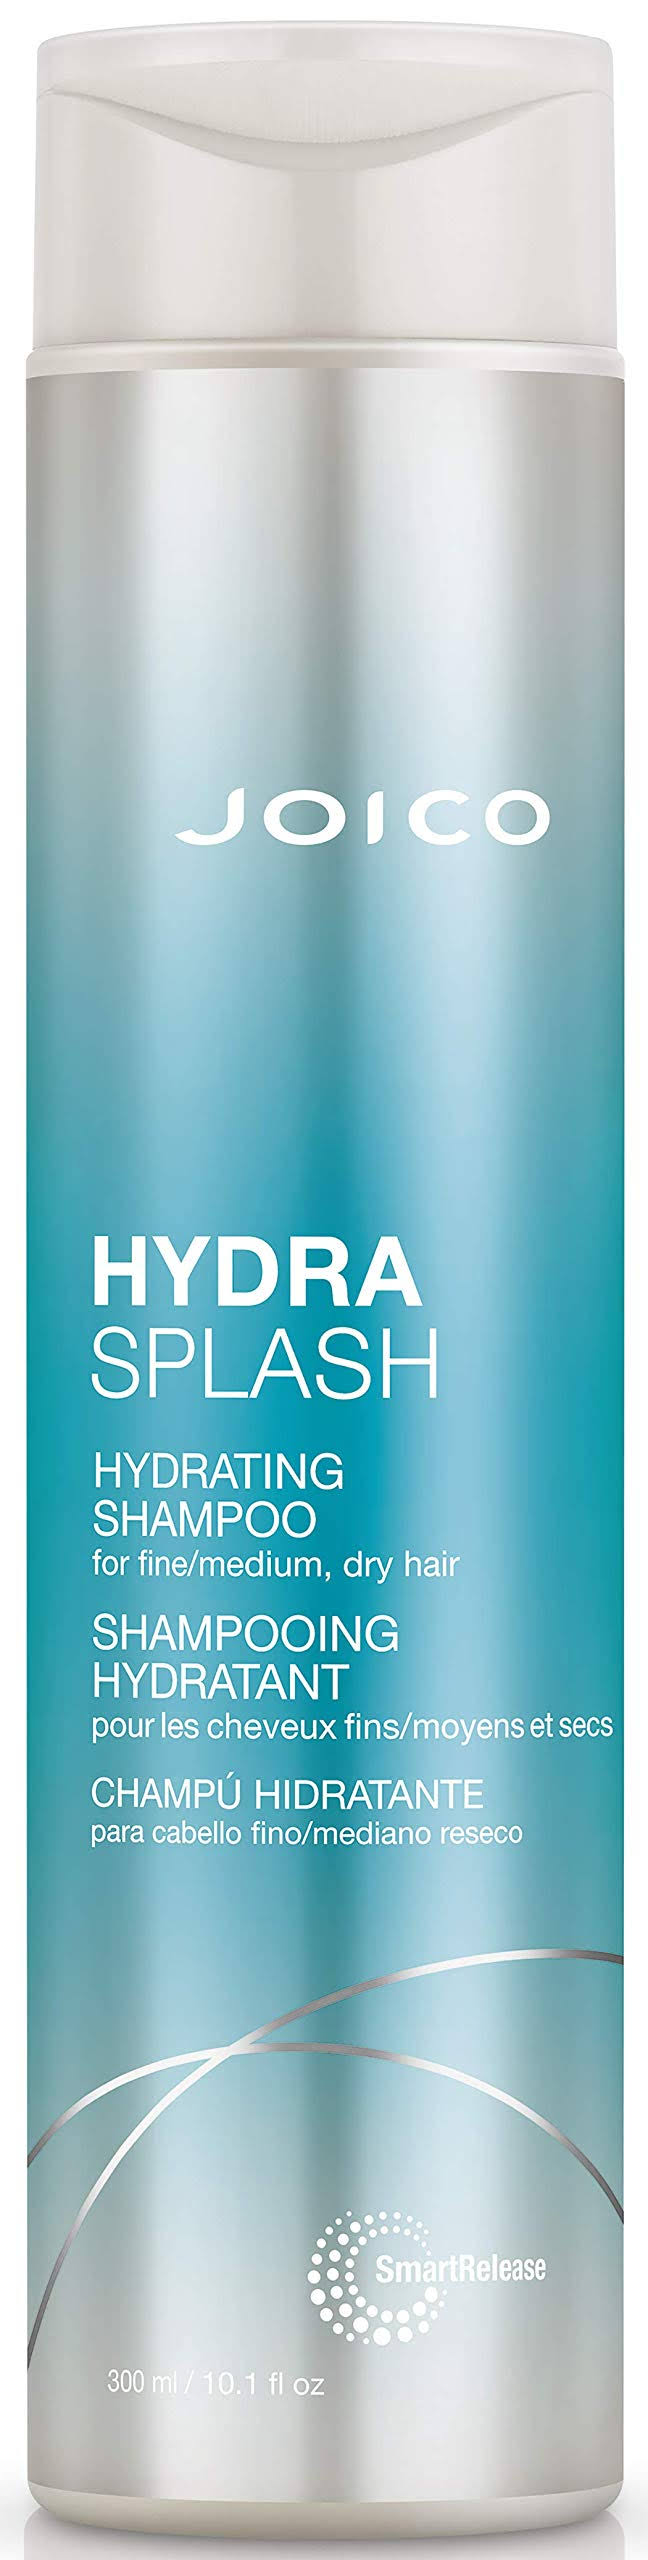 Joico HydraSplash Hydrating Shampoo For Fine Hair, 10.1-Ounce